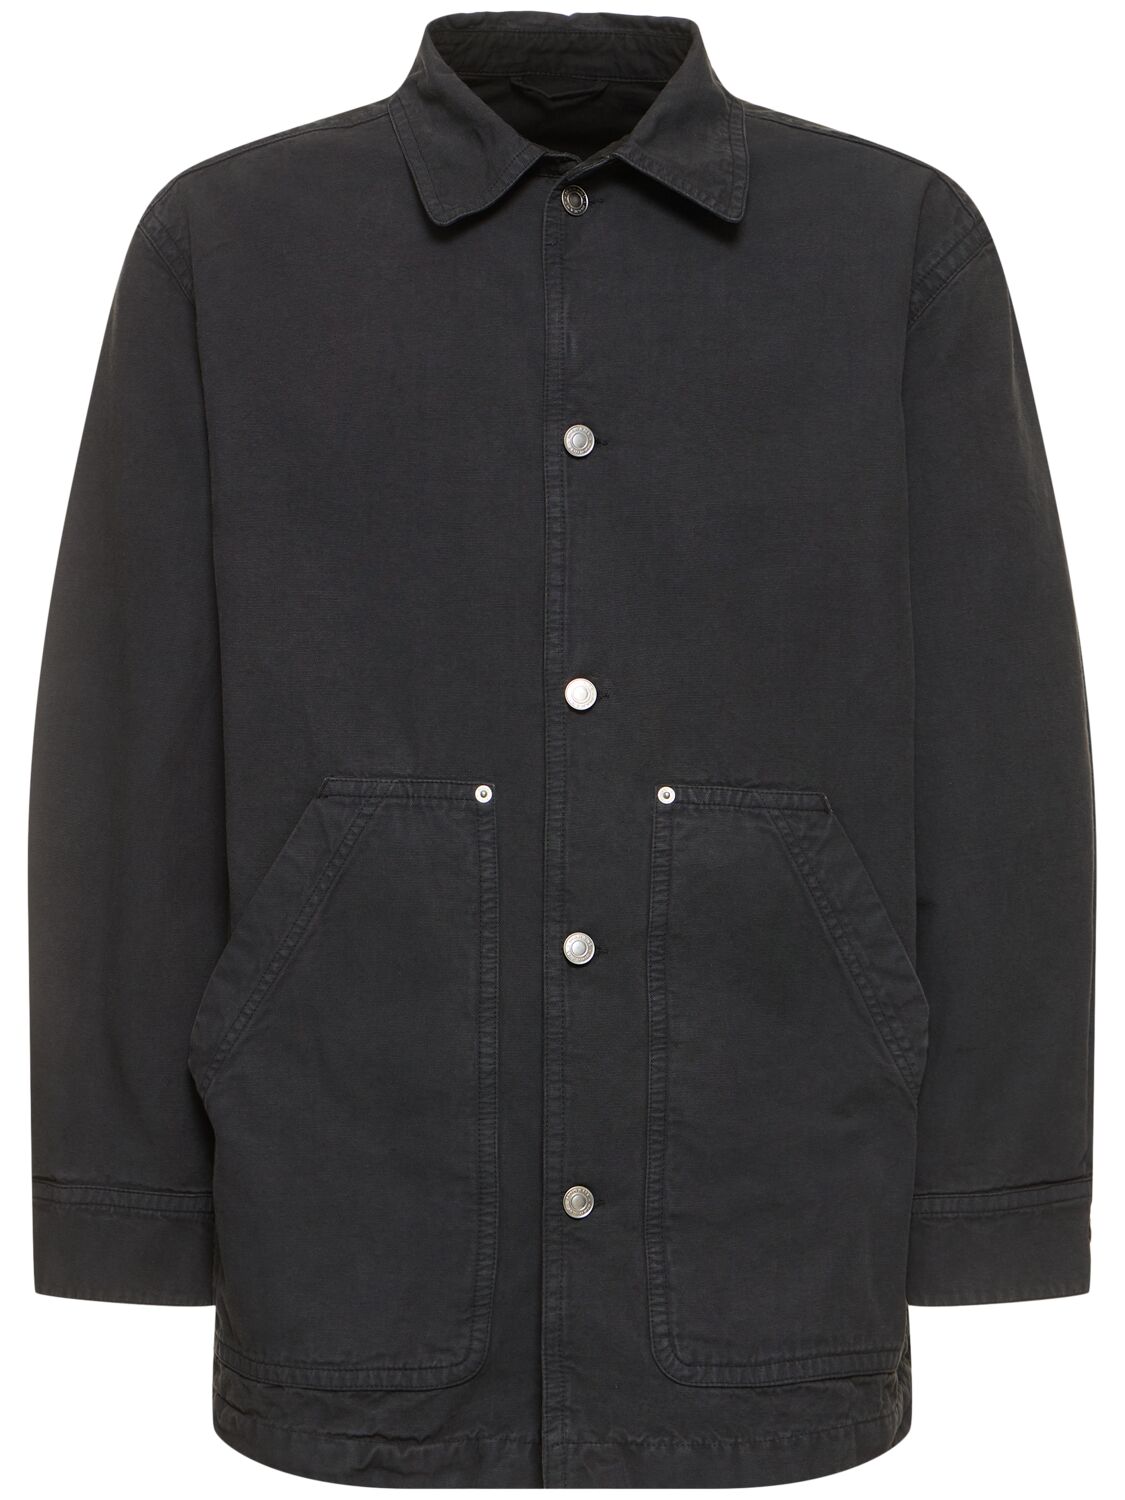 Image of Lawrence Cotton Workwear Jacket